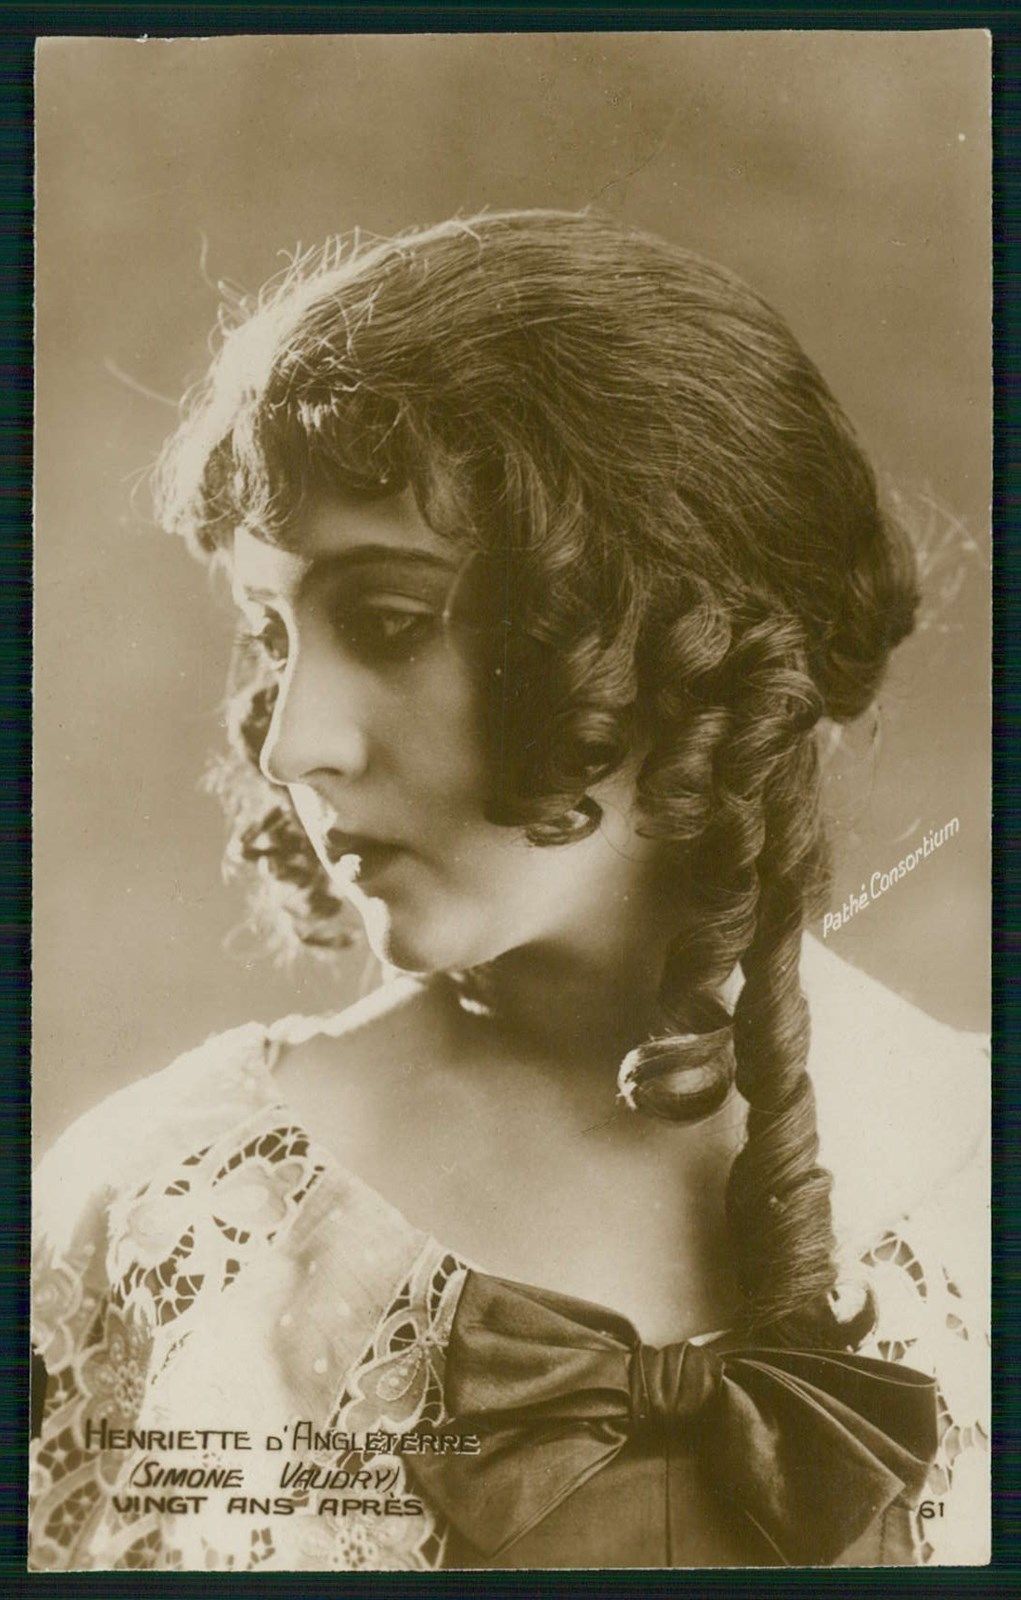 Simone Vaudry